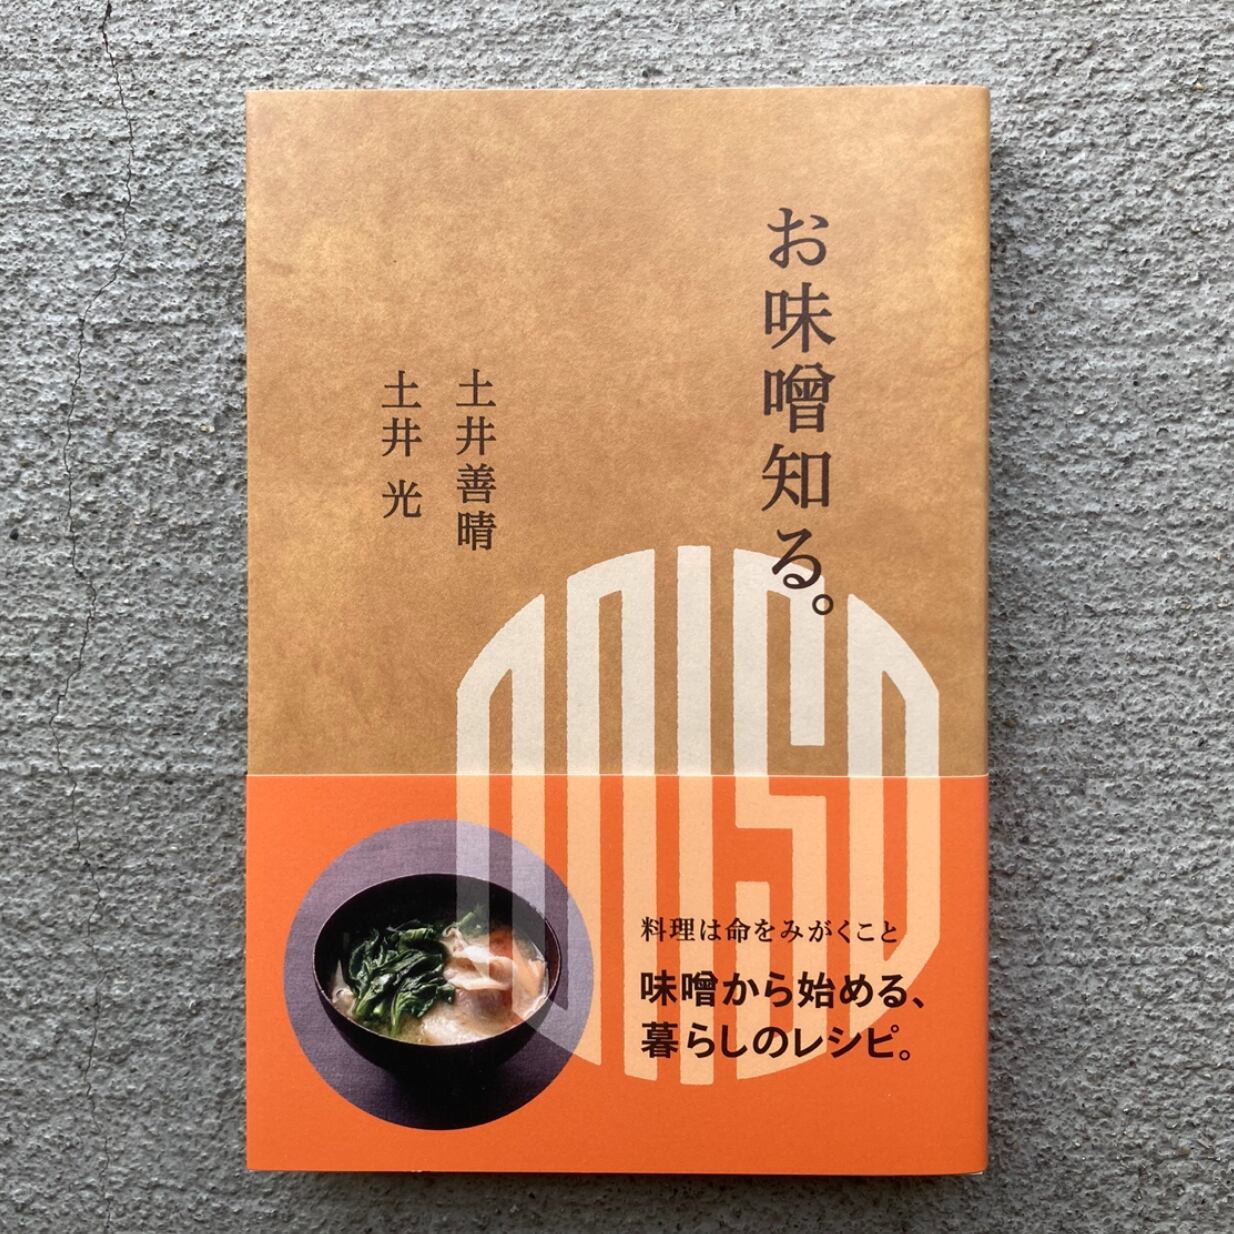 にちにいまし ちょっといい明日をつくる琉球料理と沖縄の言葉 山本彩香 著者 21春の新作 山本彩香